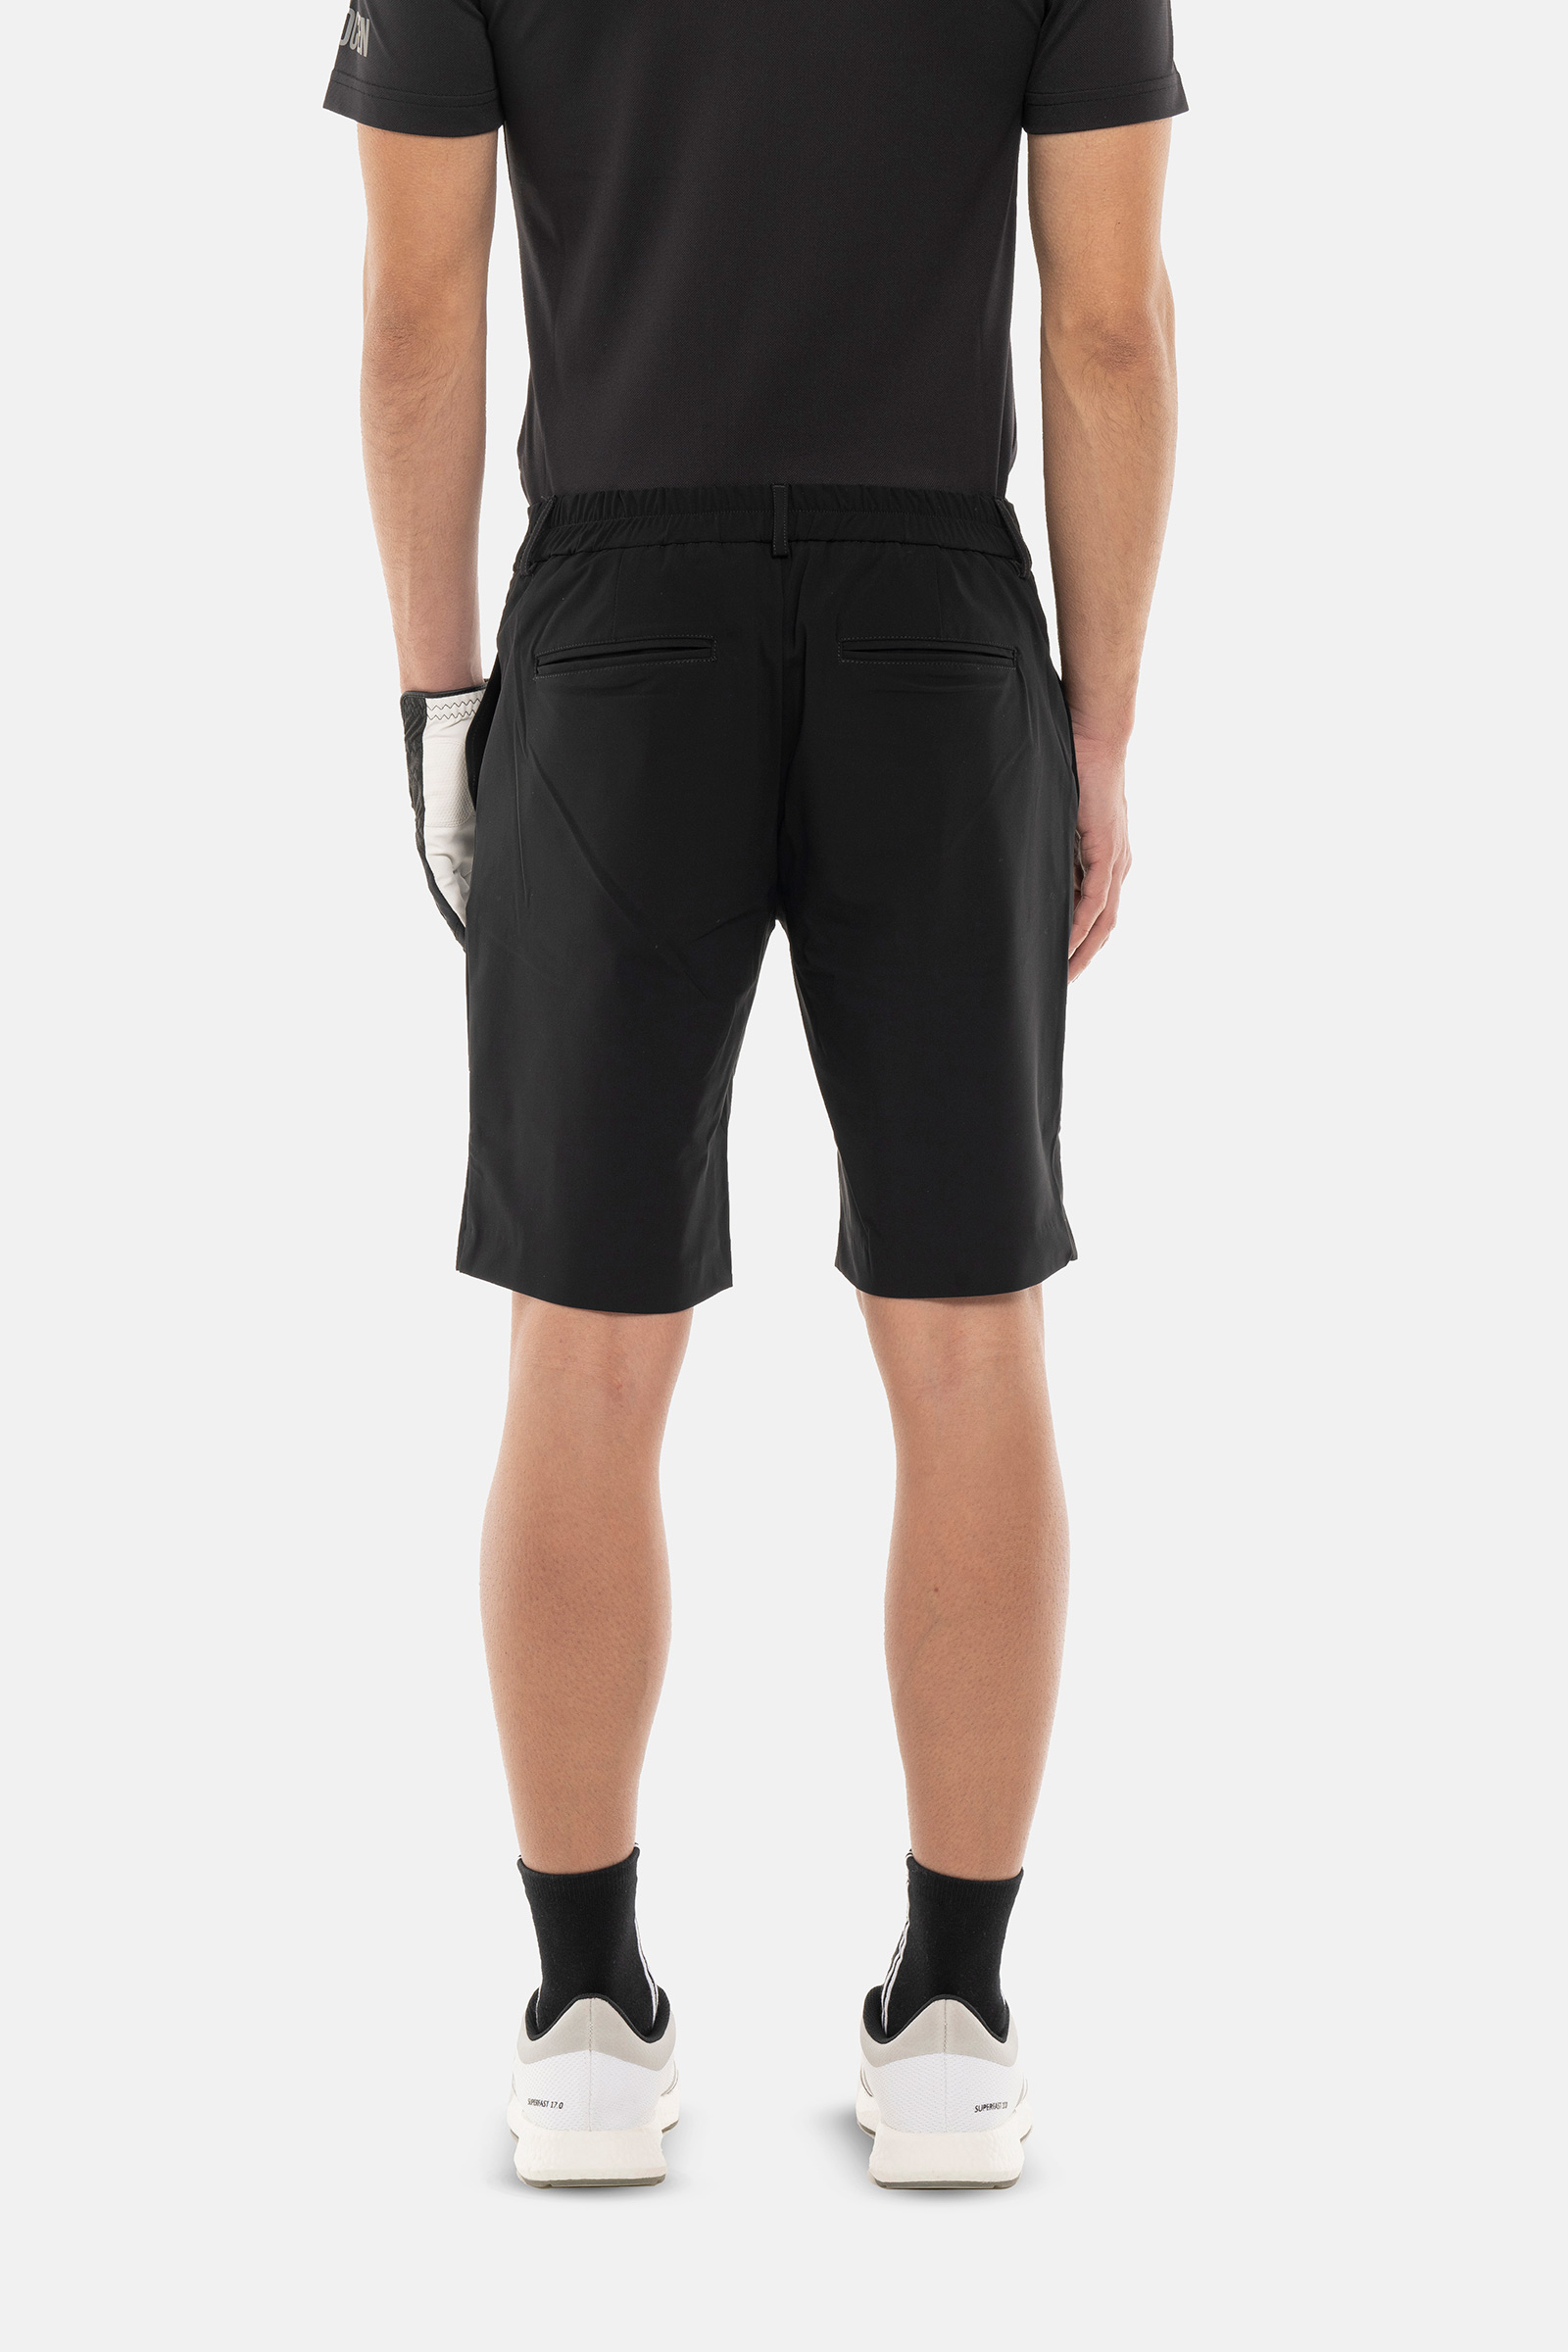 GOLF SHORTS - BLACK - Hydrogen - Luxury Sportwear